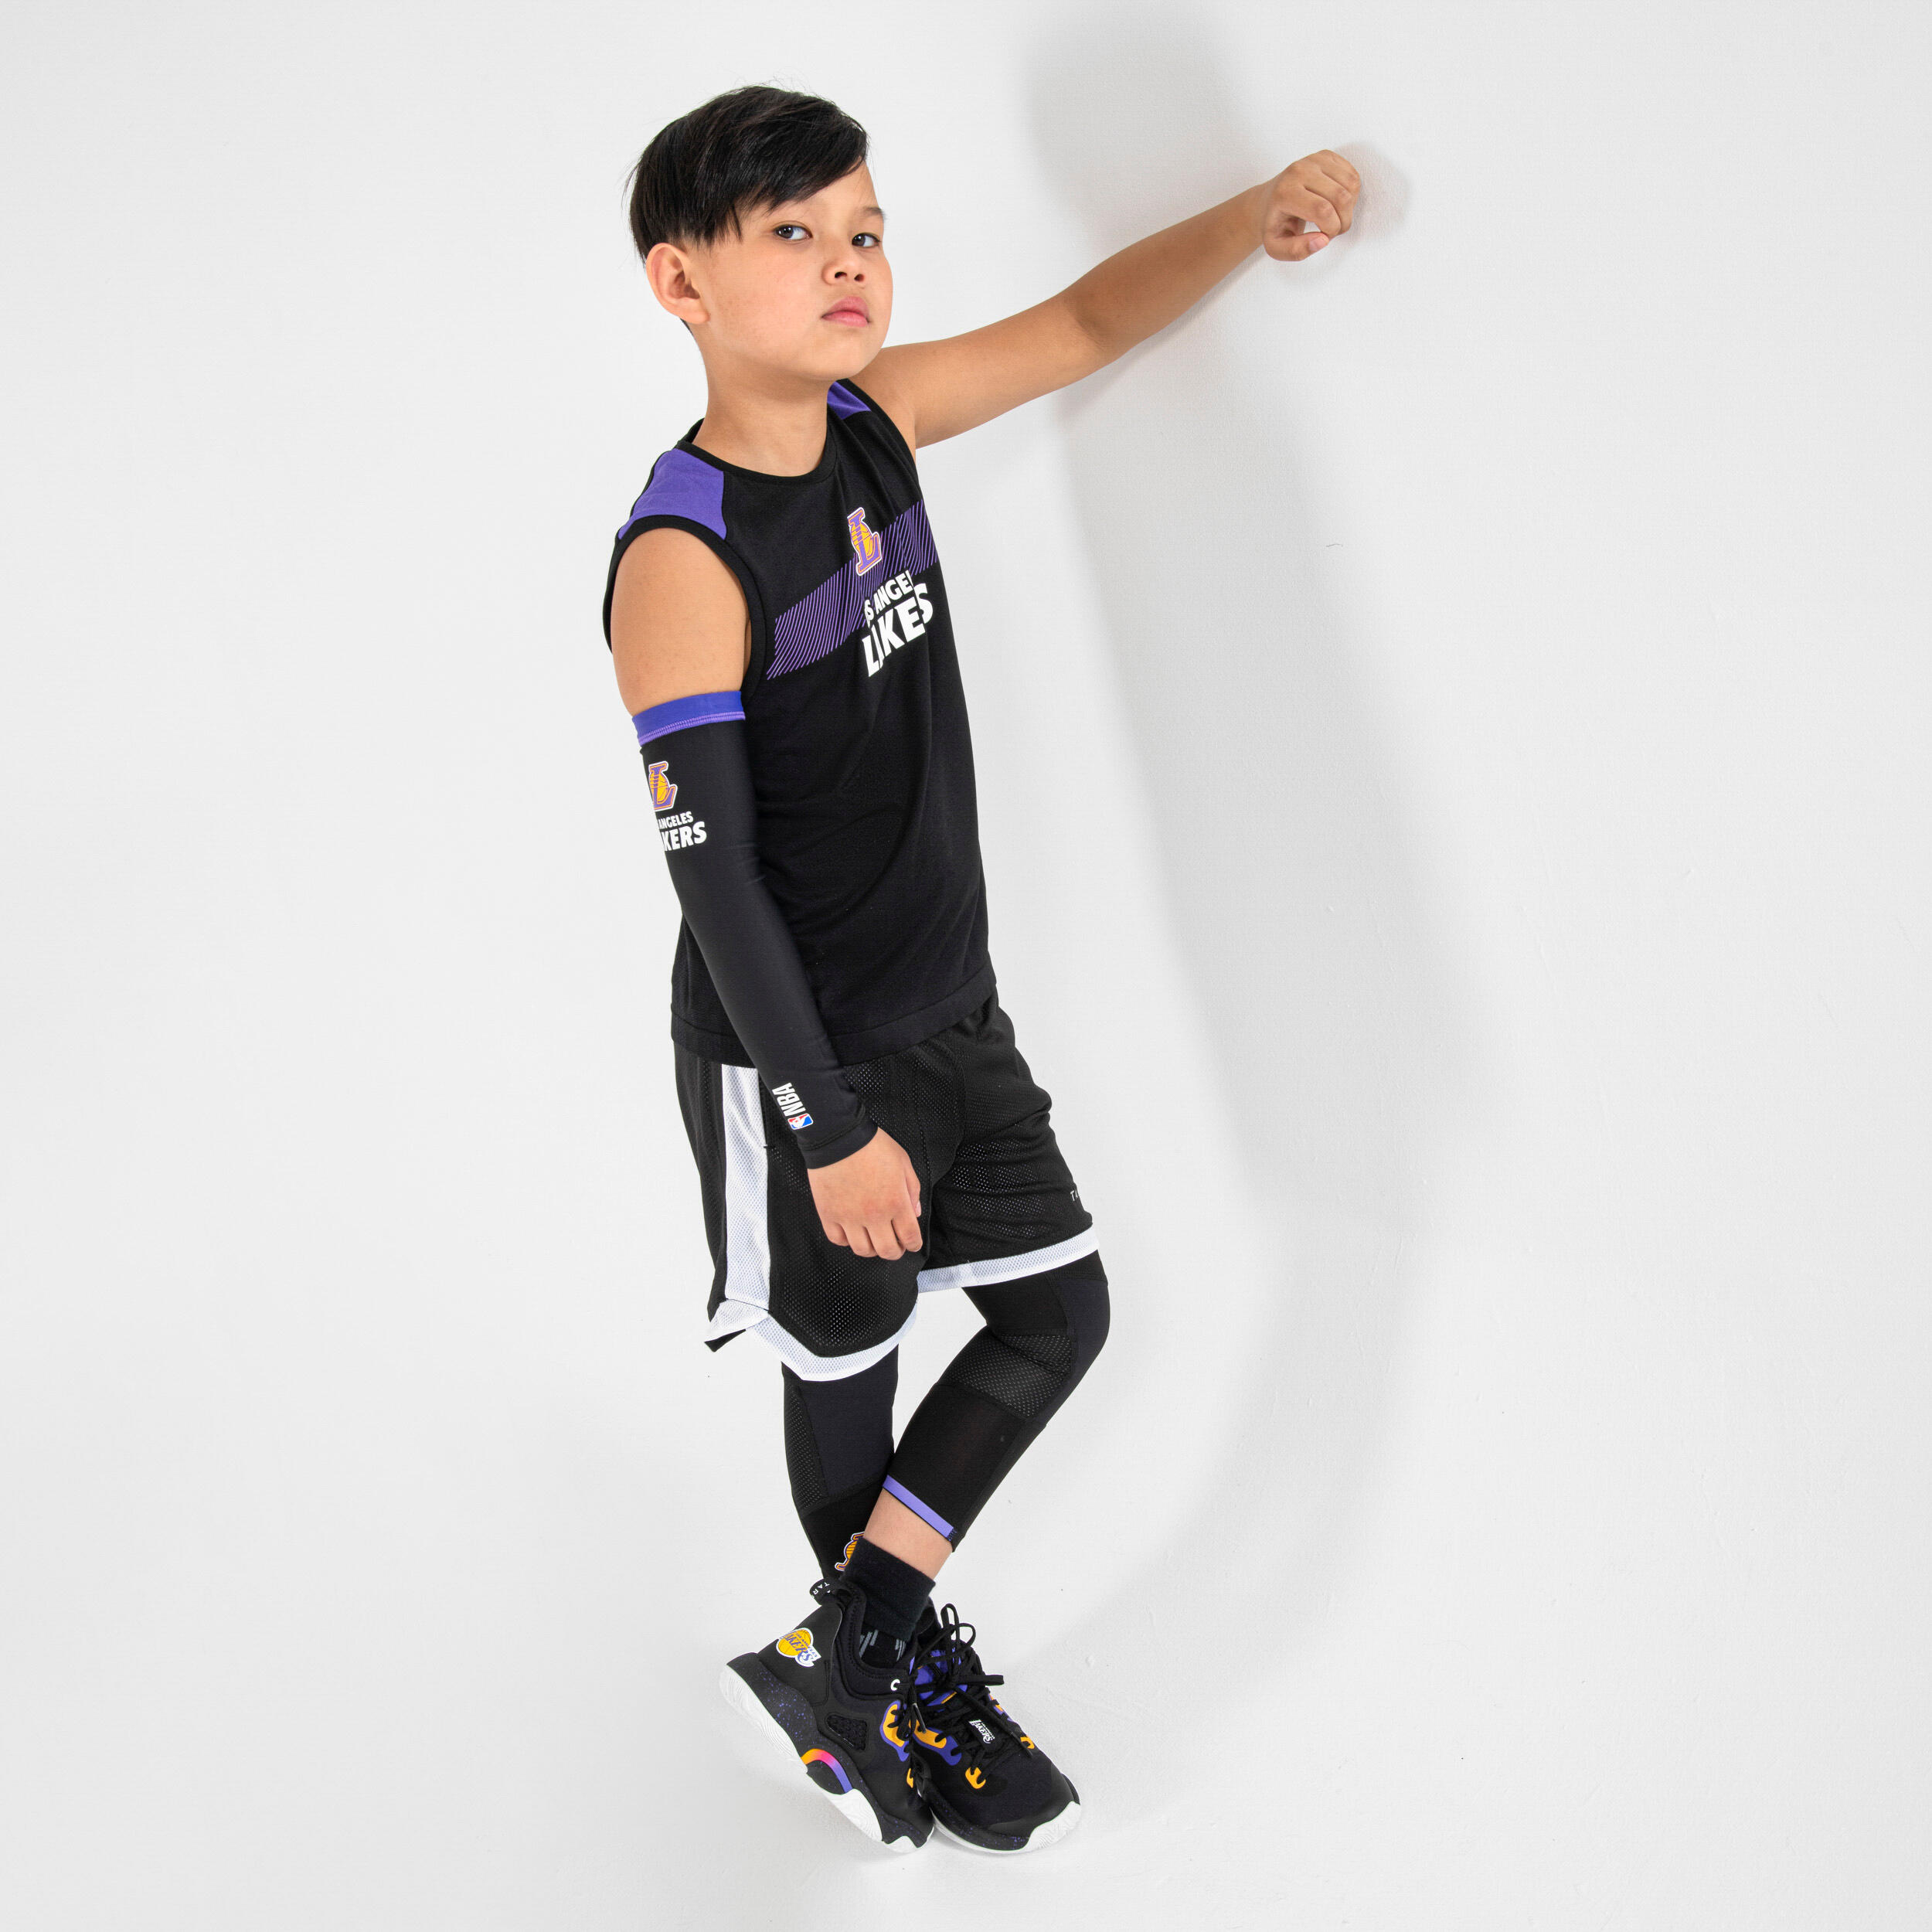 Kids' Basketball Sleeve E500 - NBA Los Angeles Lakers/Black 6/8